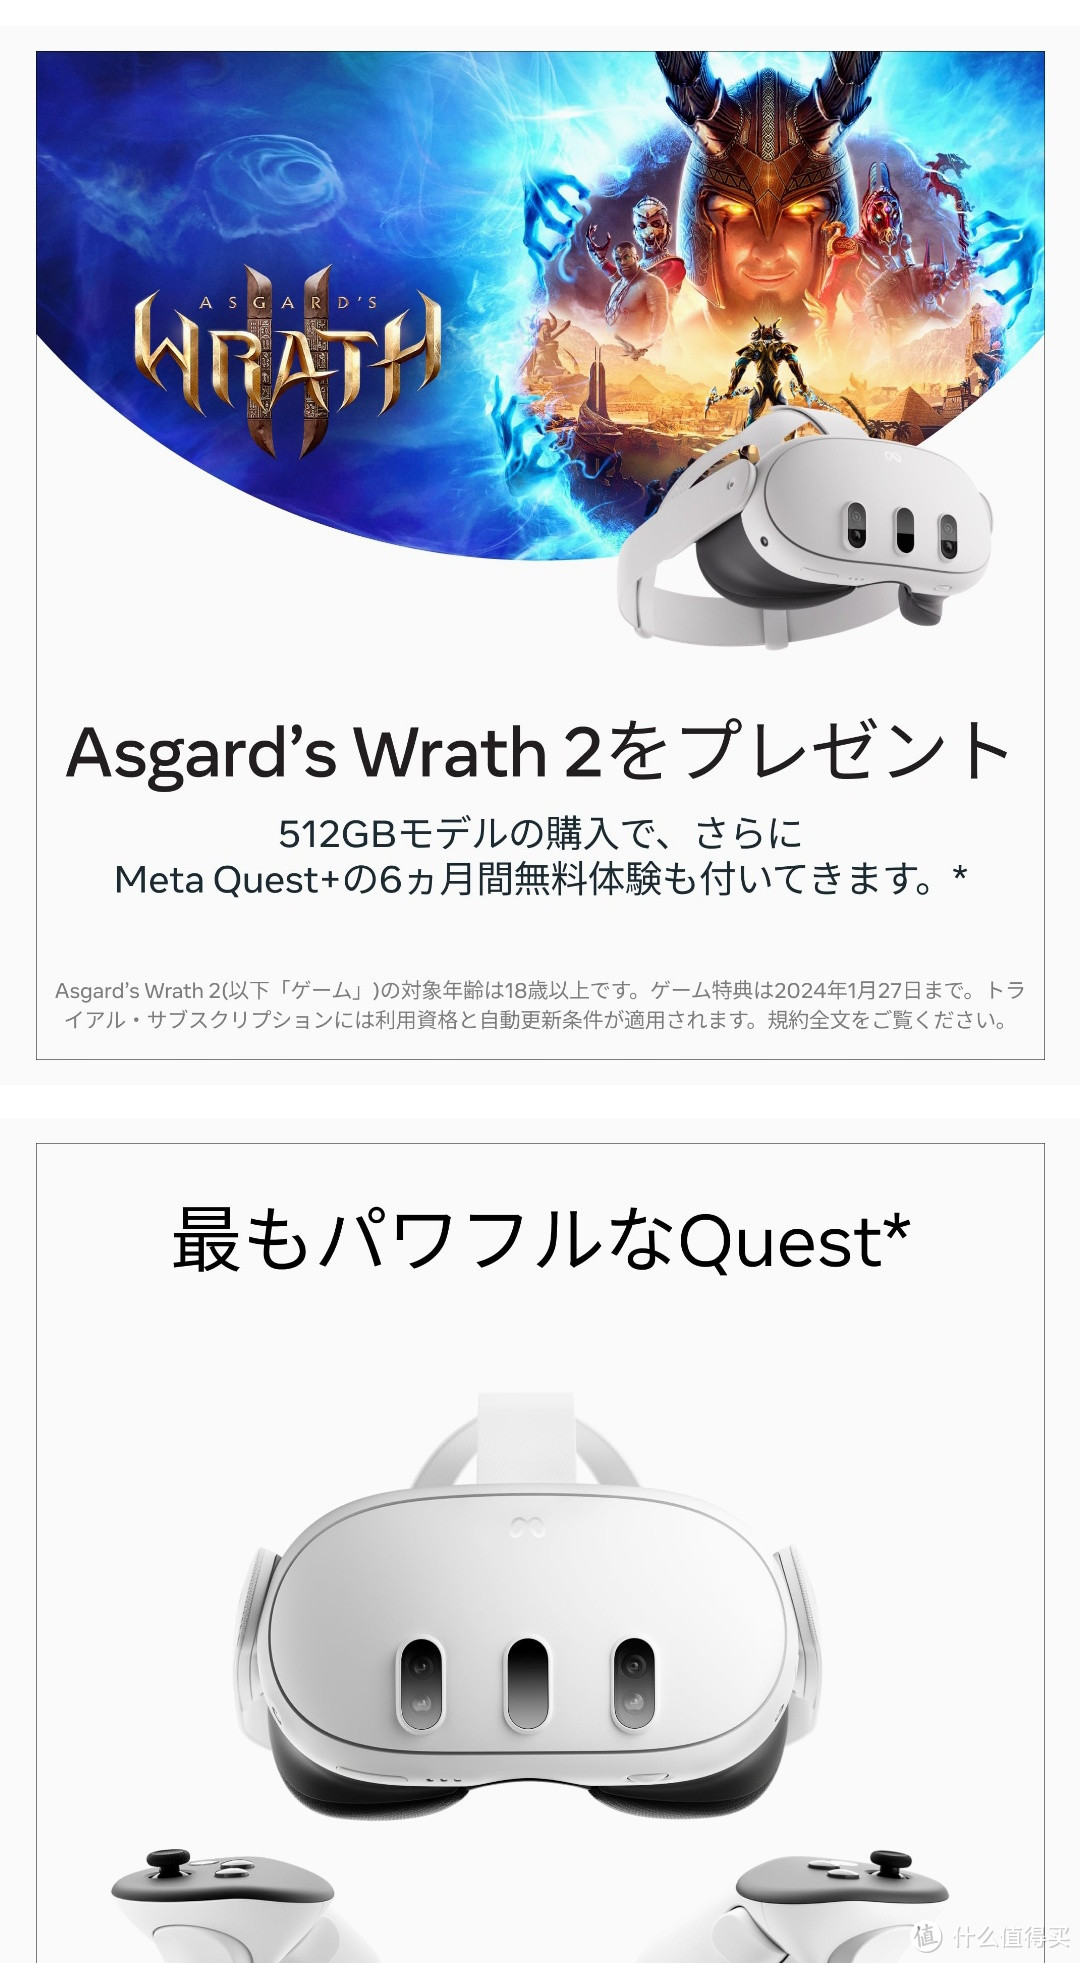 3502元 亚马逊 META Quest 3 128GB Meta发布备新一代VR头显Quest 3